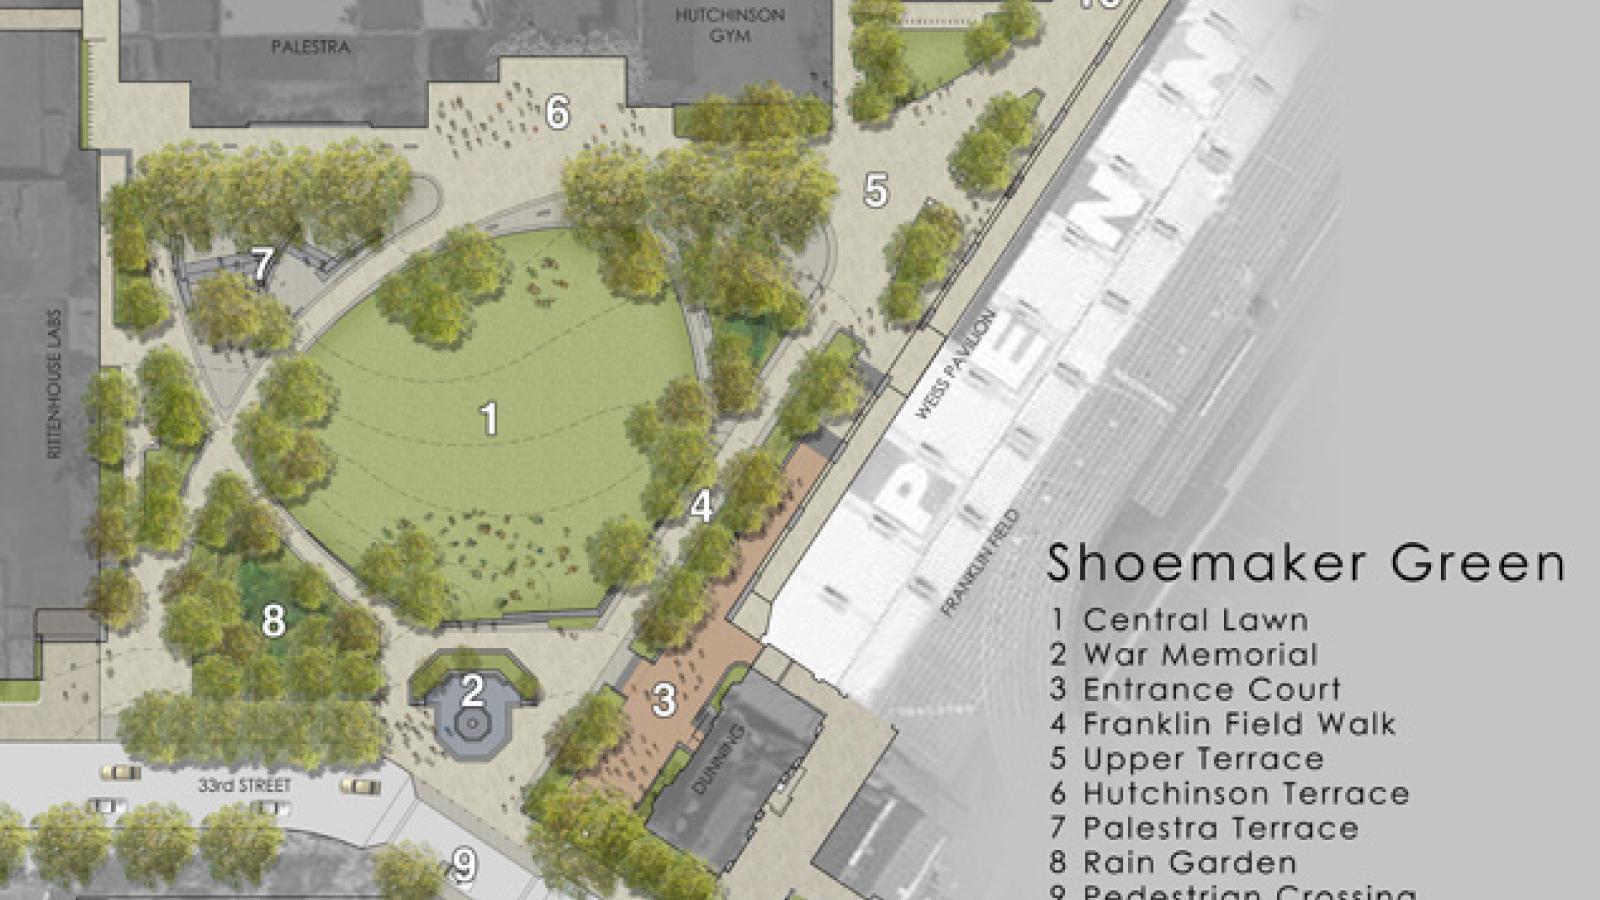 Shoemaker Green Site Plan